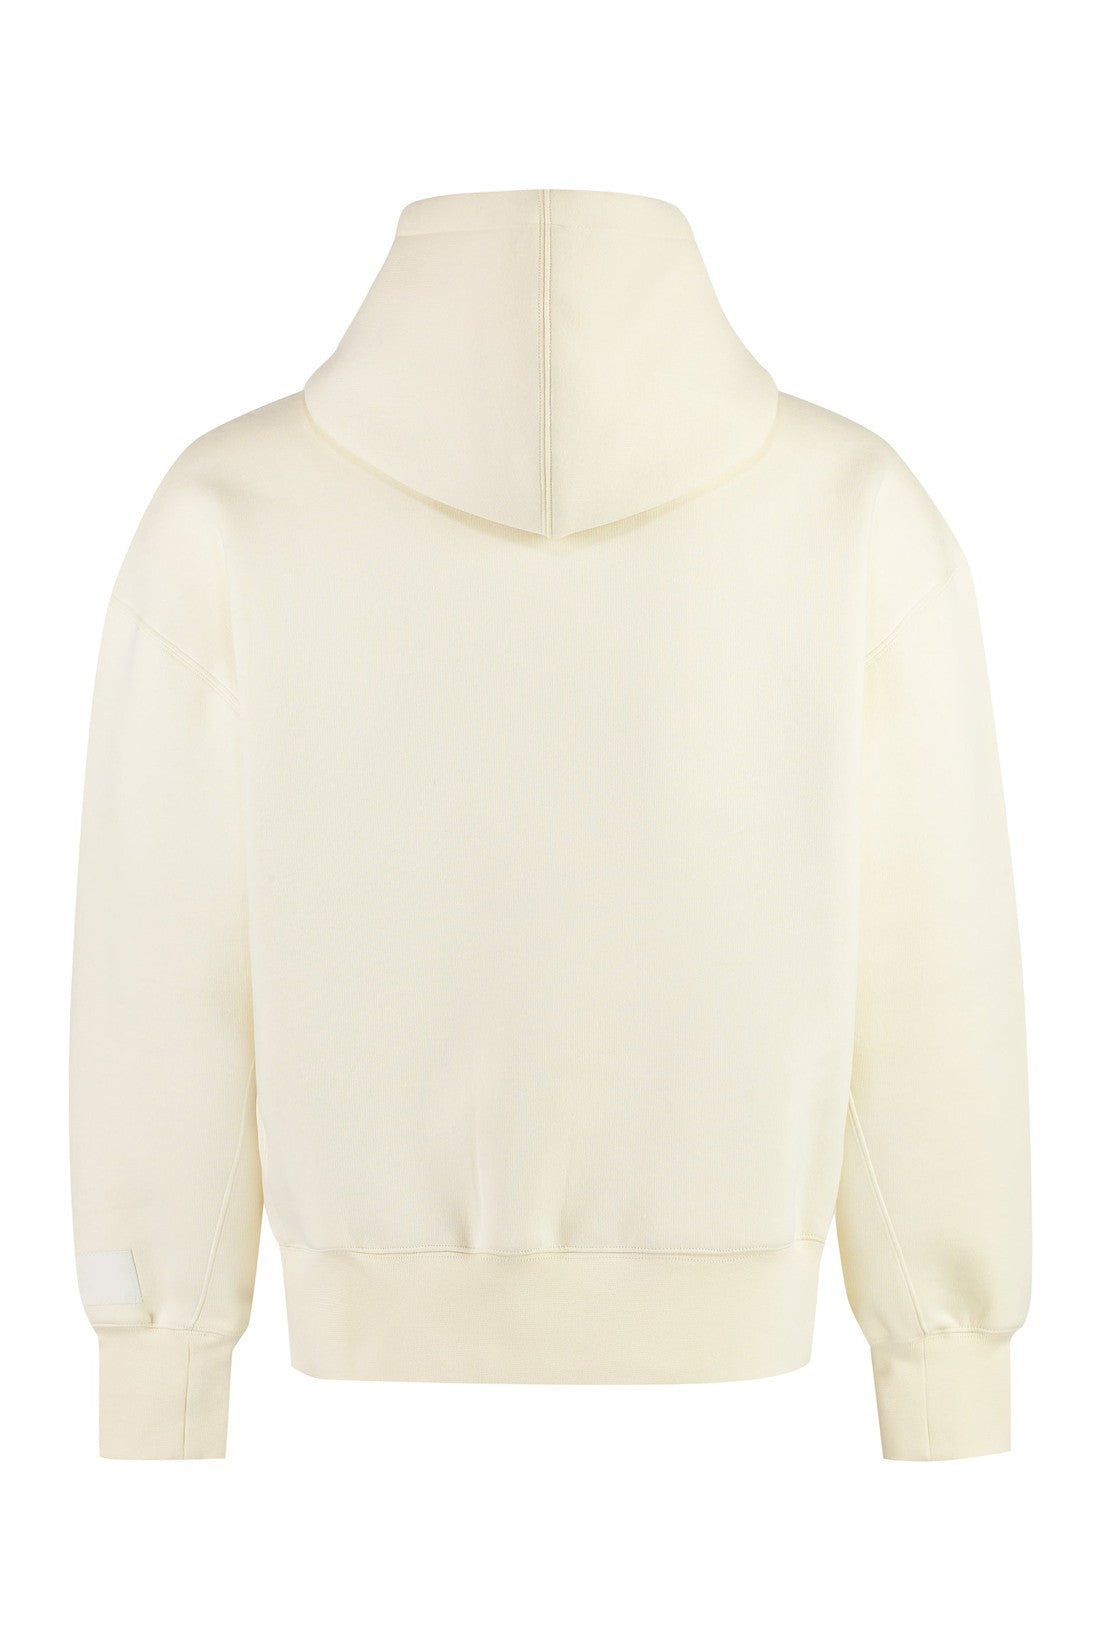 AMI PARIS-OUTLET-SALE-Cotton hoodie-ARCHIVIST